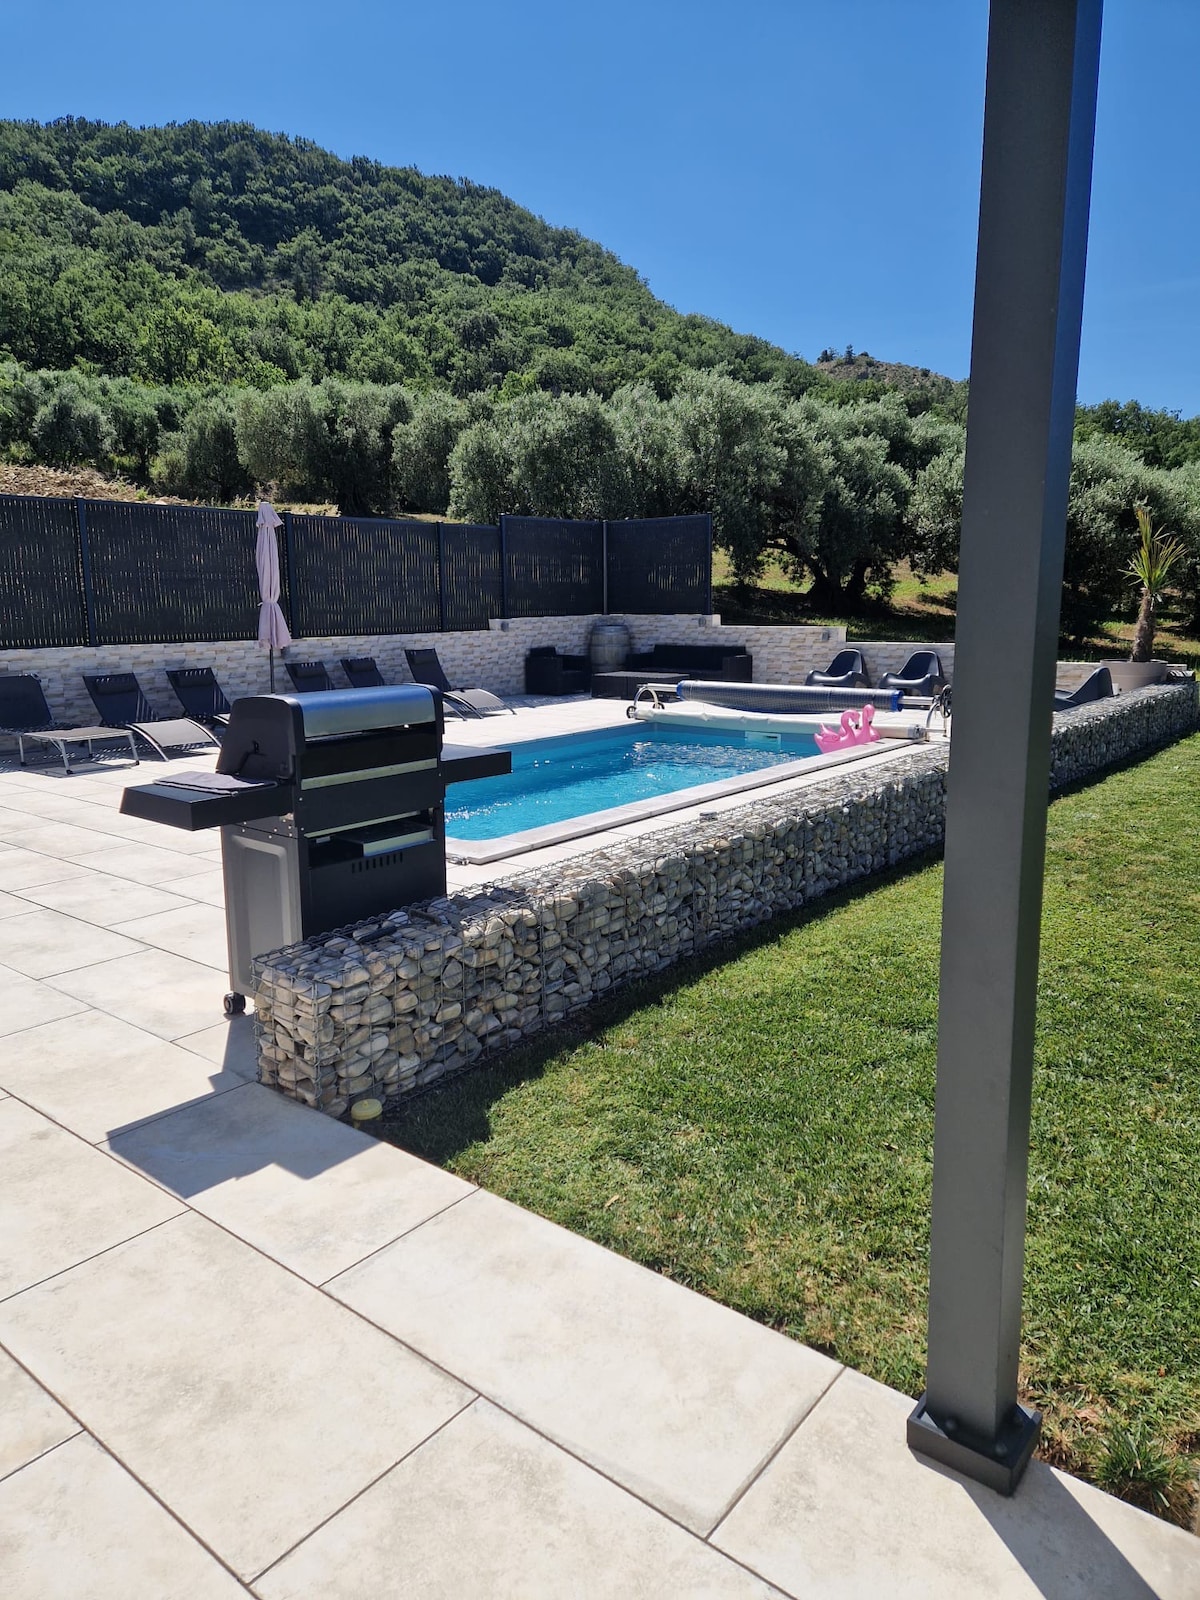 Villa climatisée avec piscine privée